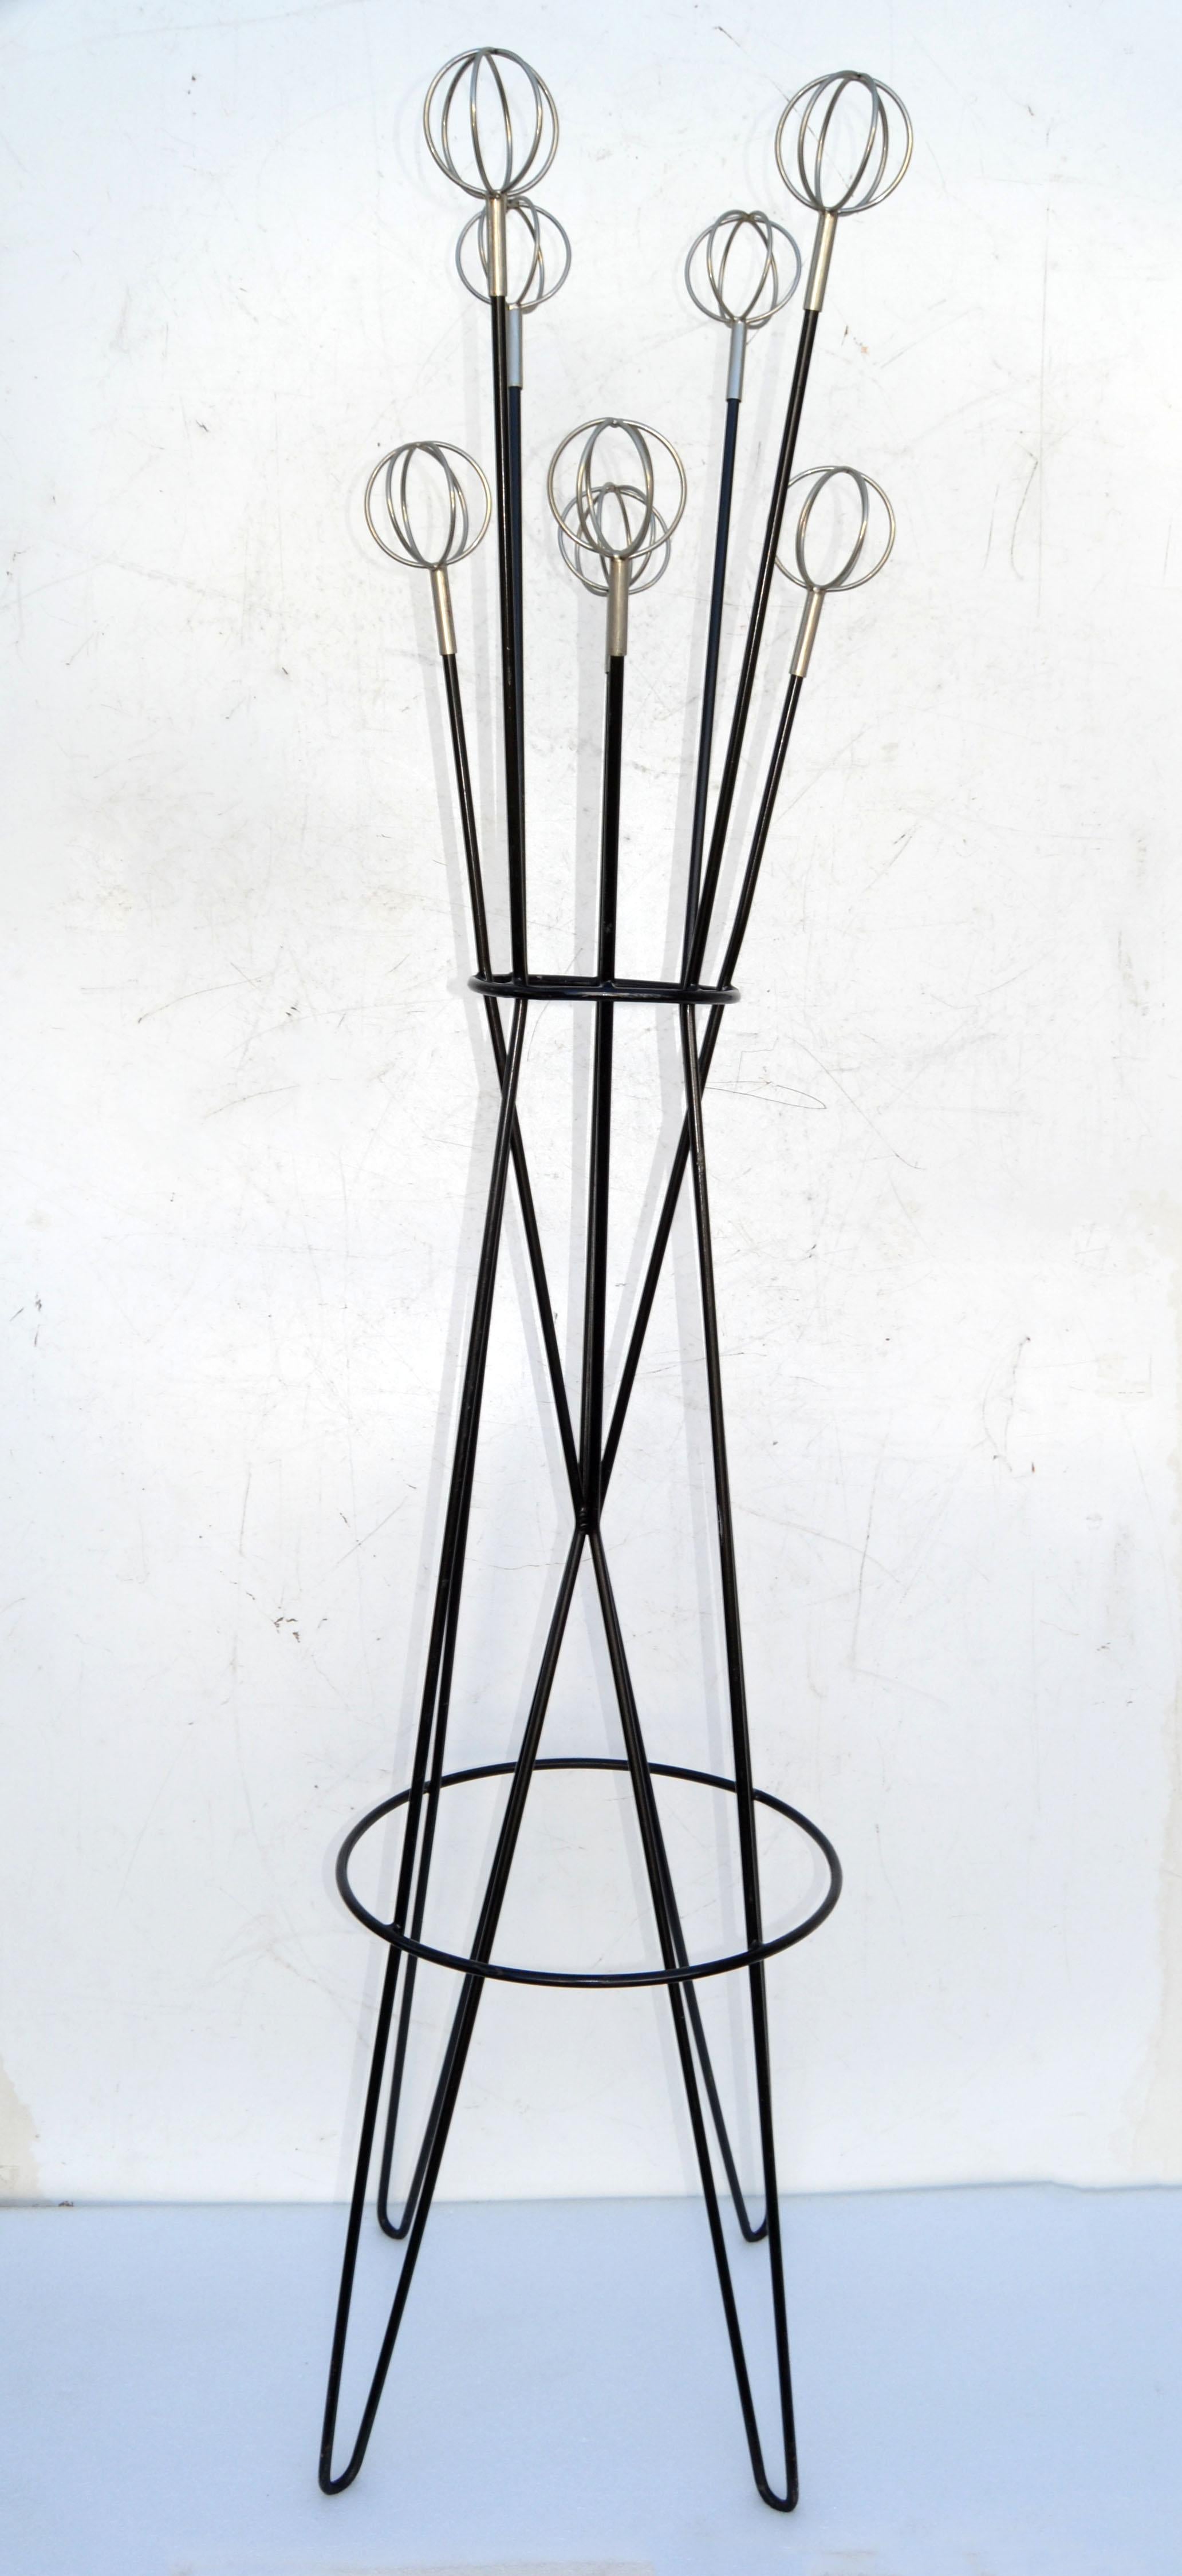 Garderobe oder Hutablage aus dem Weltraum von Roger Feraud für GEO France.
Mit einem schwarz lackierten Eisenkern, Haarnadelbeinen und acht vernickelten Astrolabien.
Mid-Century Modern Design aus den späten 1950er Jahren.
 